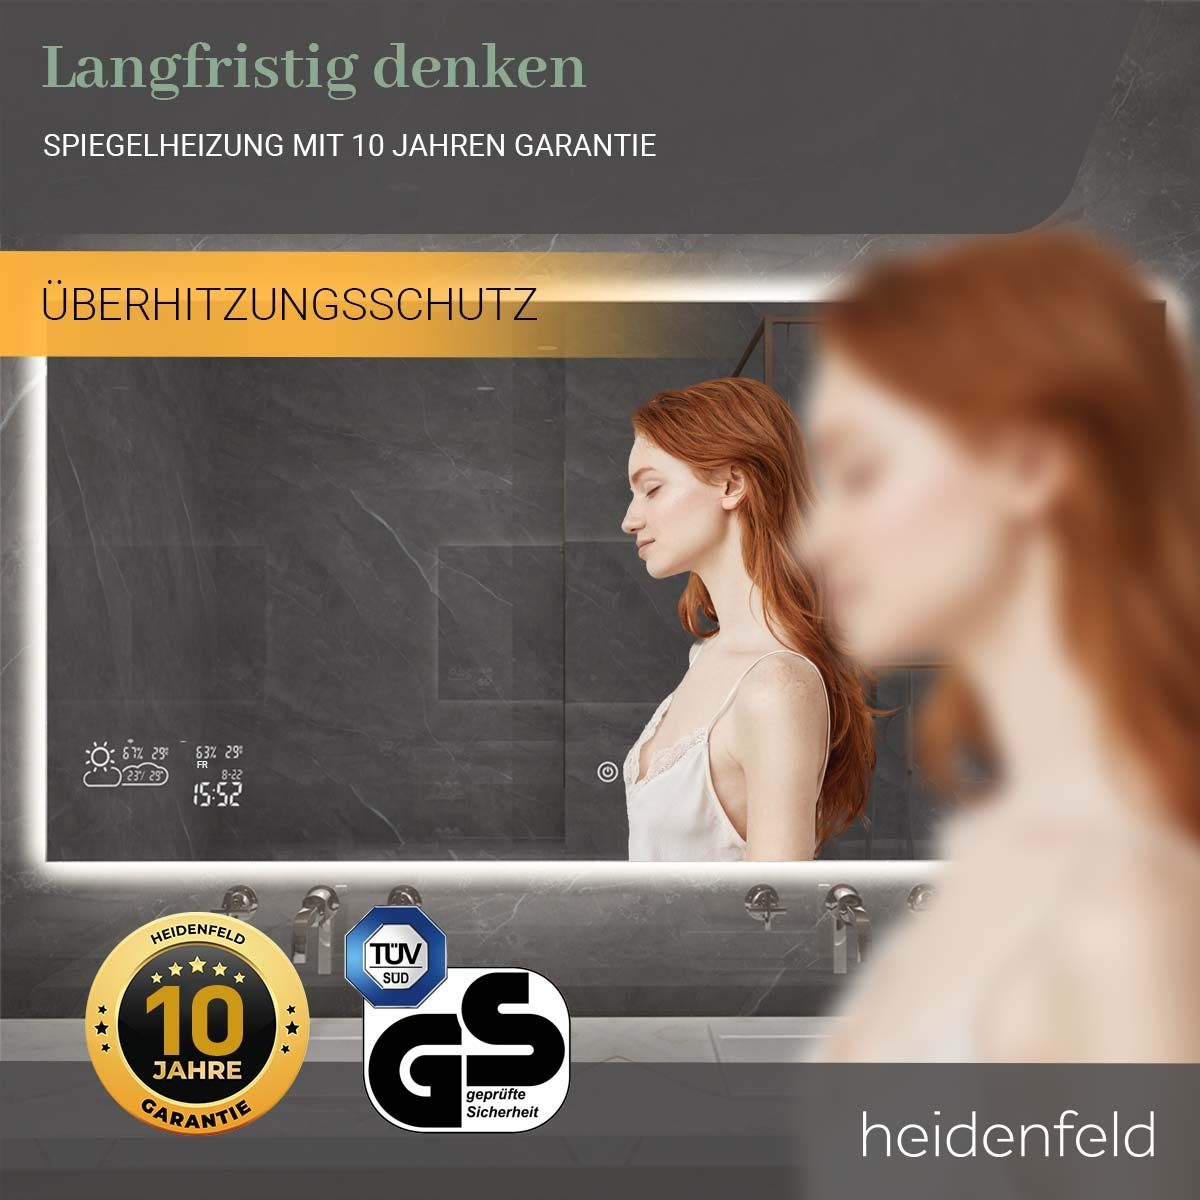 Infrarotheizung - WIFI inkl. Heidenfeld Anti-Beschlag Touchdisplay Spiegelheizung - Garantie, HF-HS200 Rahmenbeleuchtung - - 500 bis 10 Spiegel Jahre Watt